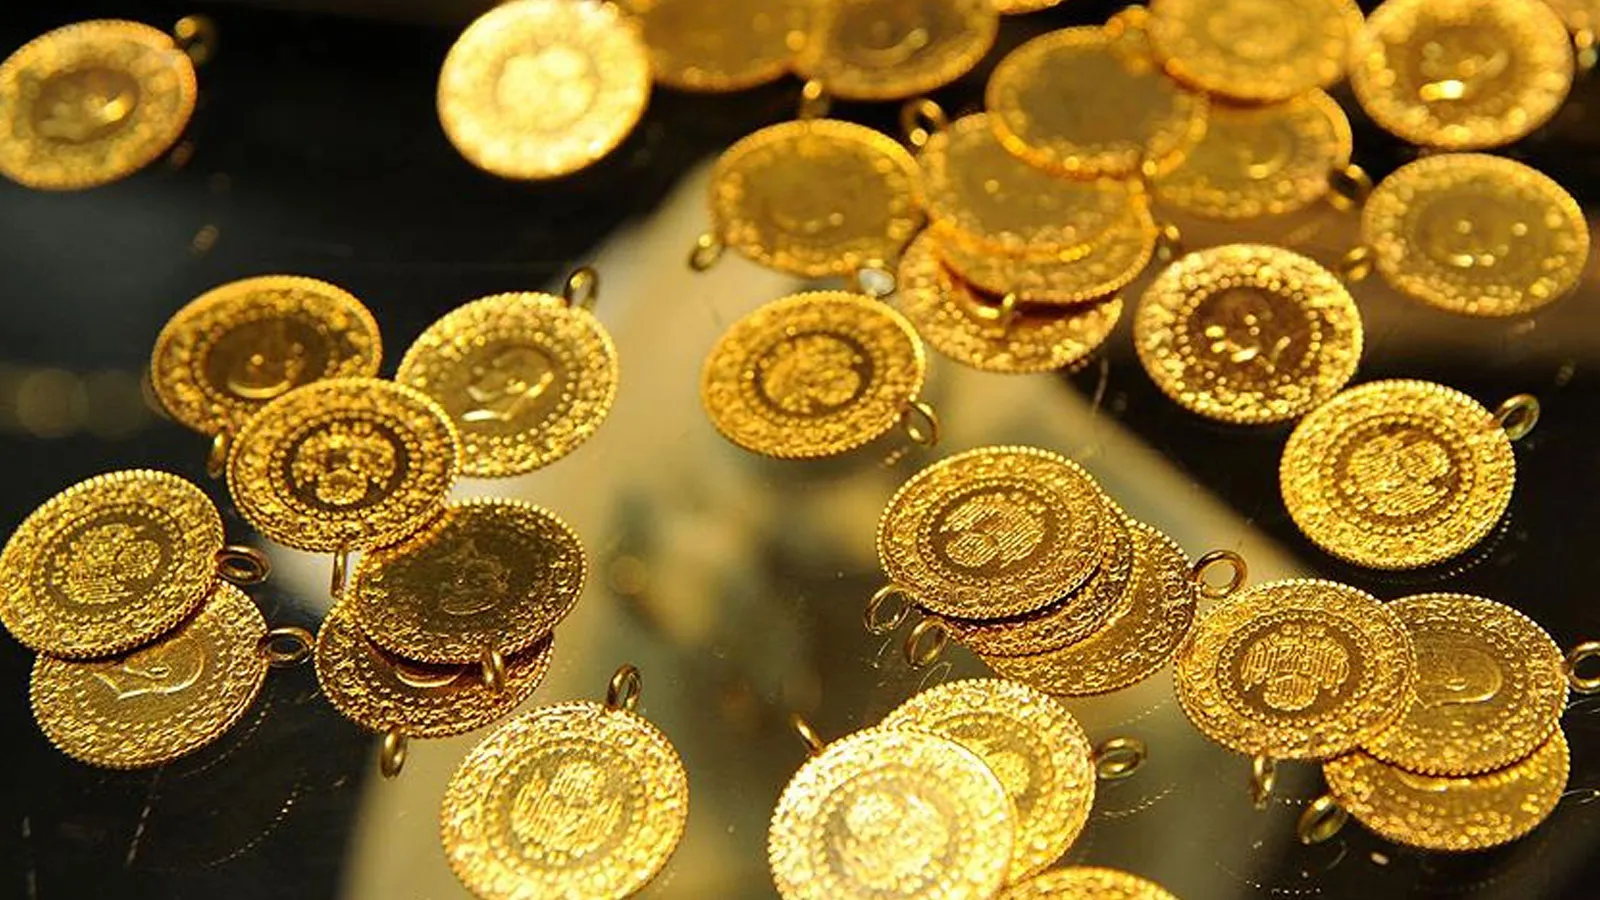 Altın fiyatları yeni rekoru kırdı! Gram altın 2.500 TL'nin de üstüne çıktı